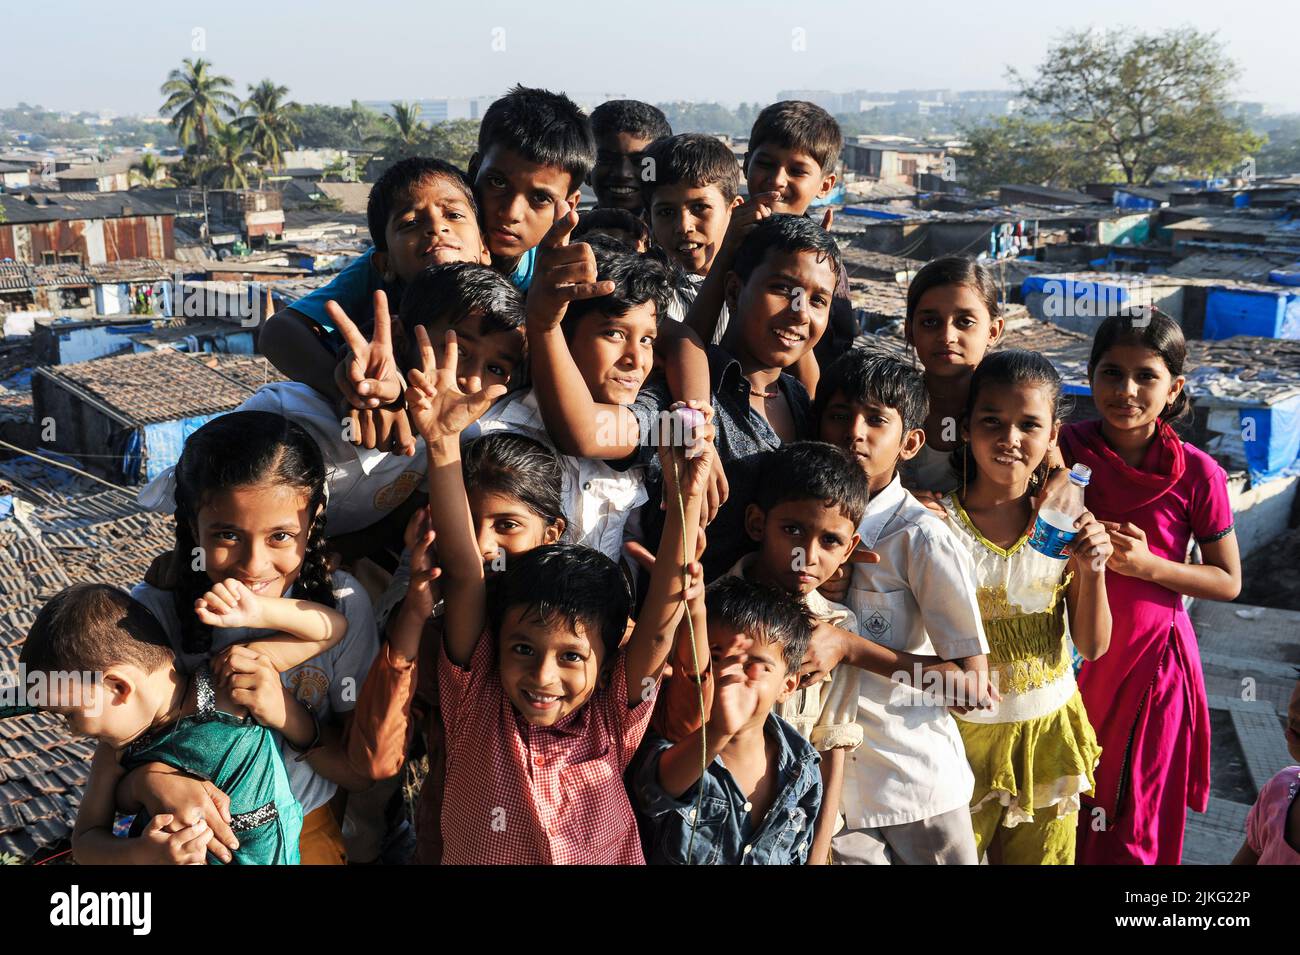 10.12.2011, India, , Mumbai - Bambini in una cittadina di Shivaji Nagar vicino all'Aeroporto Internazionale Chhatrapati Shivaji Maharaj. 0SL111210D006CAROEX.JP Foto Stock